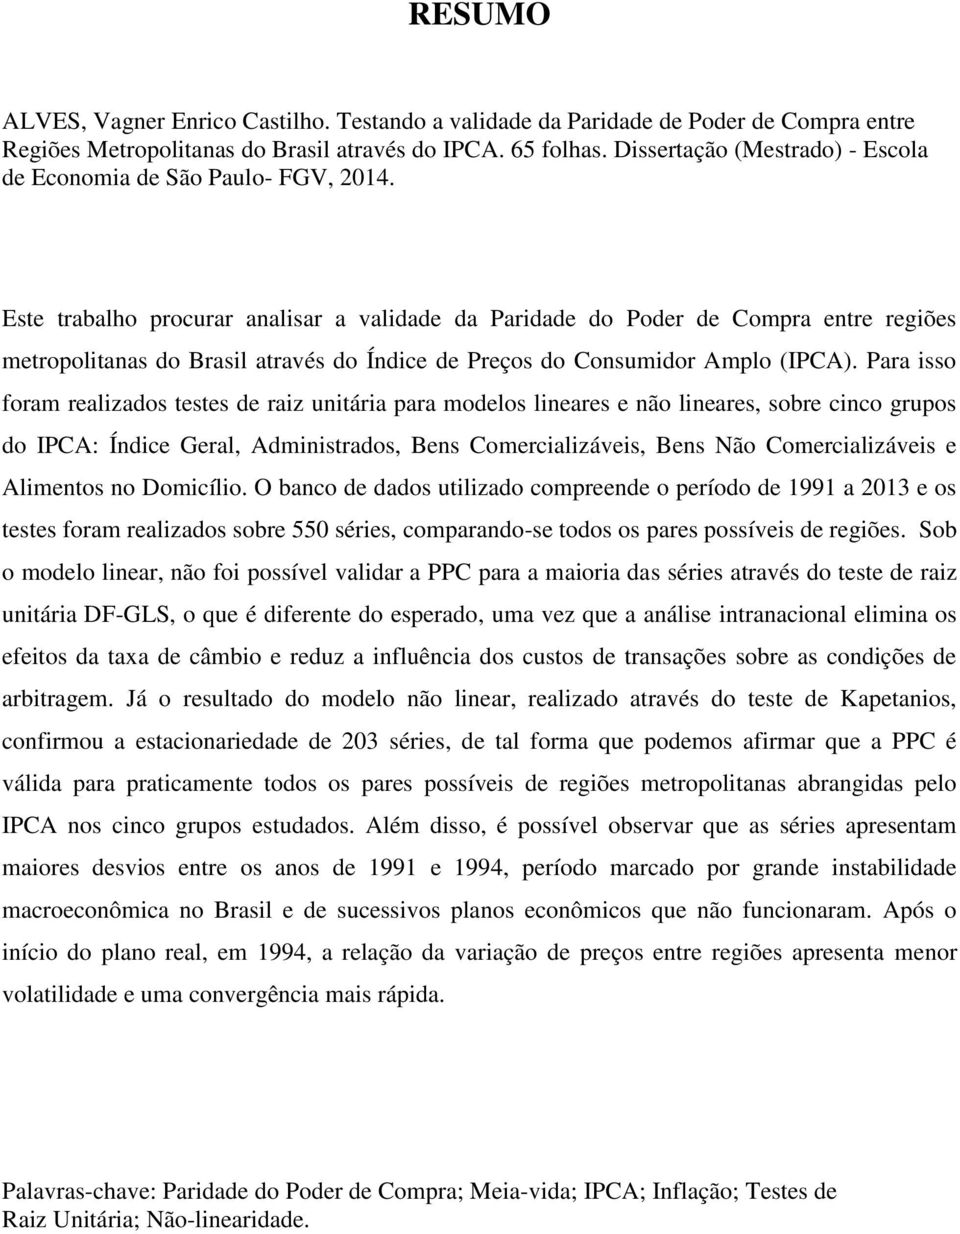 Este trabalho procurar analisar a validade da Paridade do Poder de Compra entre regiões metropolitanas do Brasil através do Índice de Preços do Consumidor Amplo (IPCA).